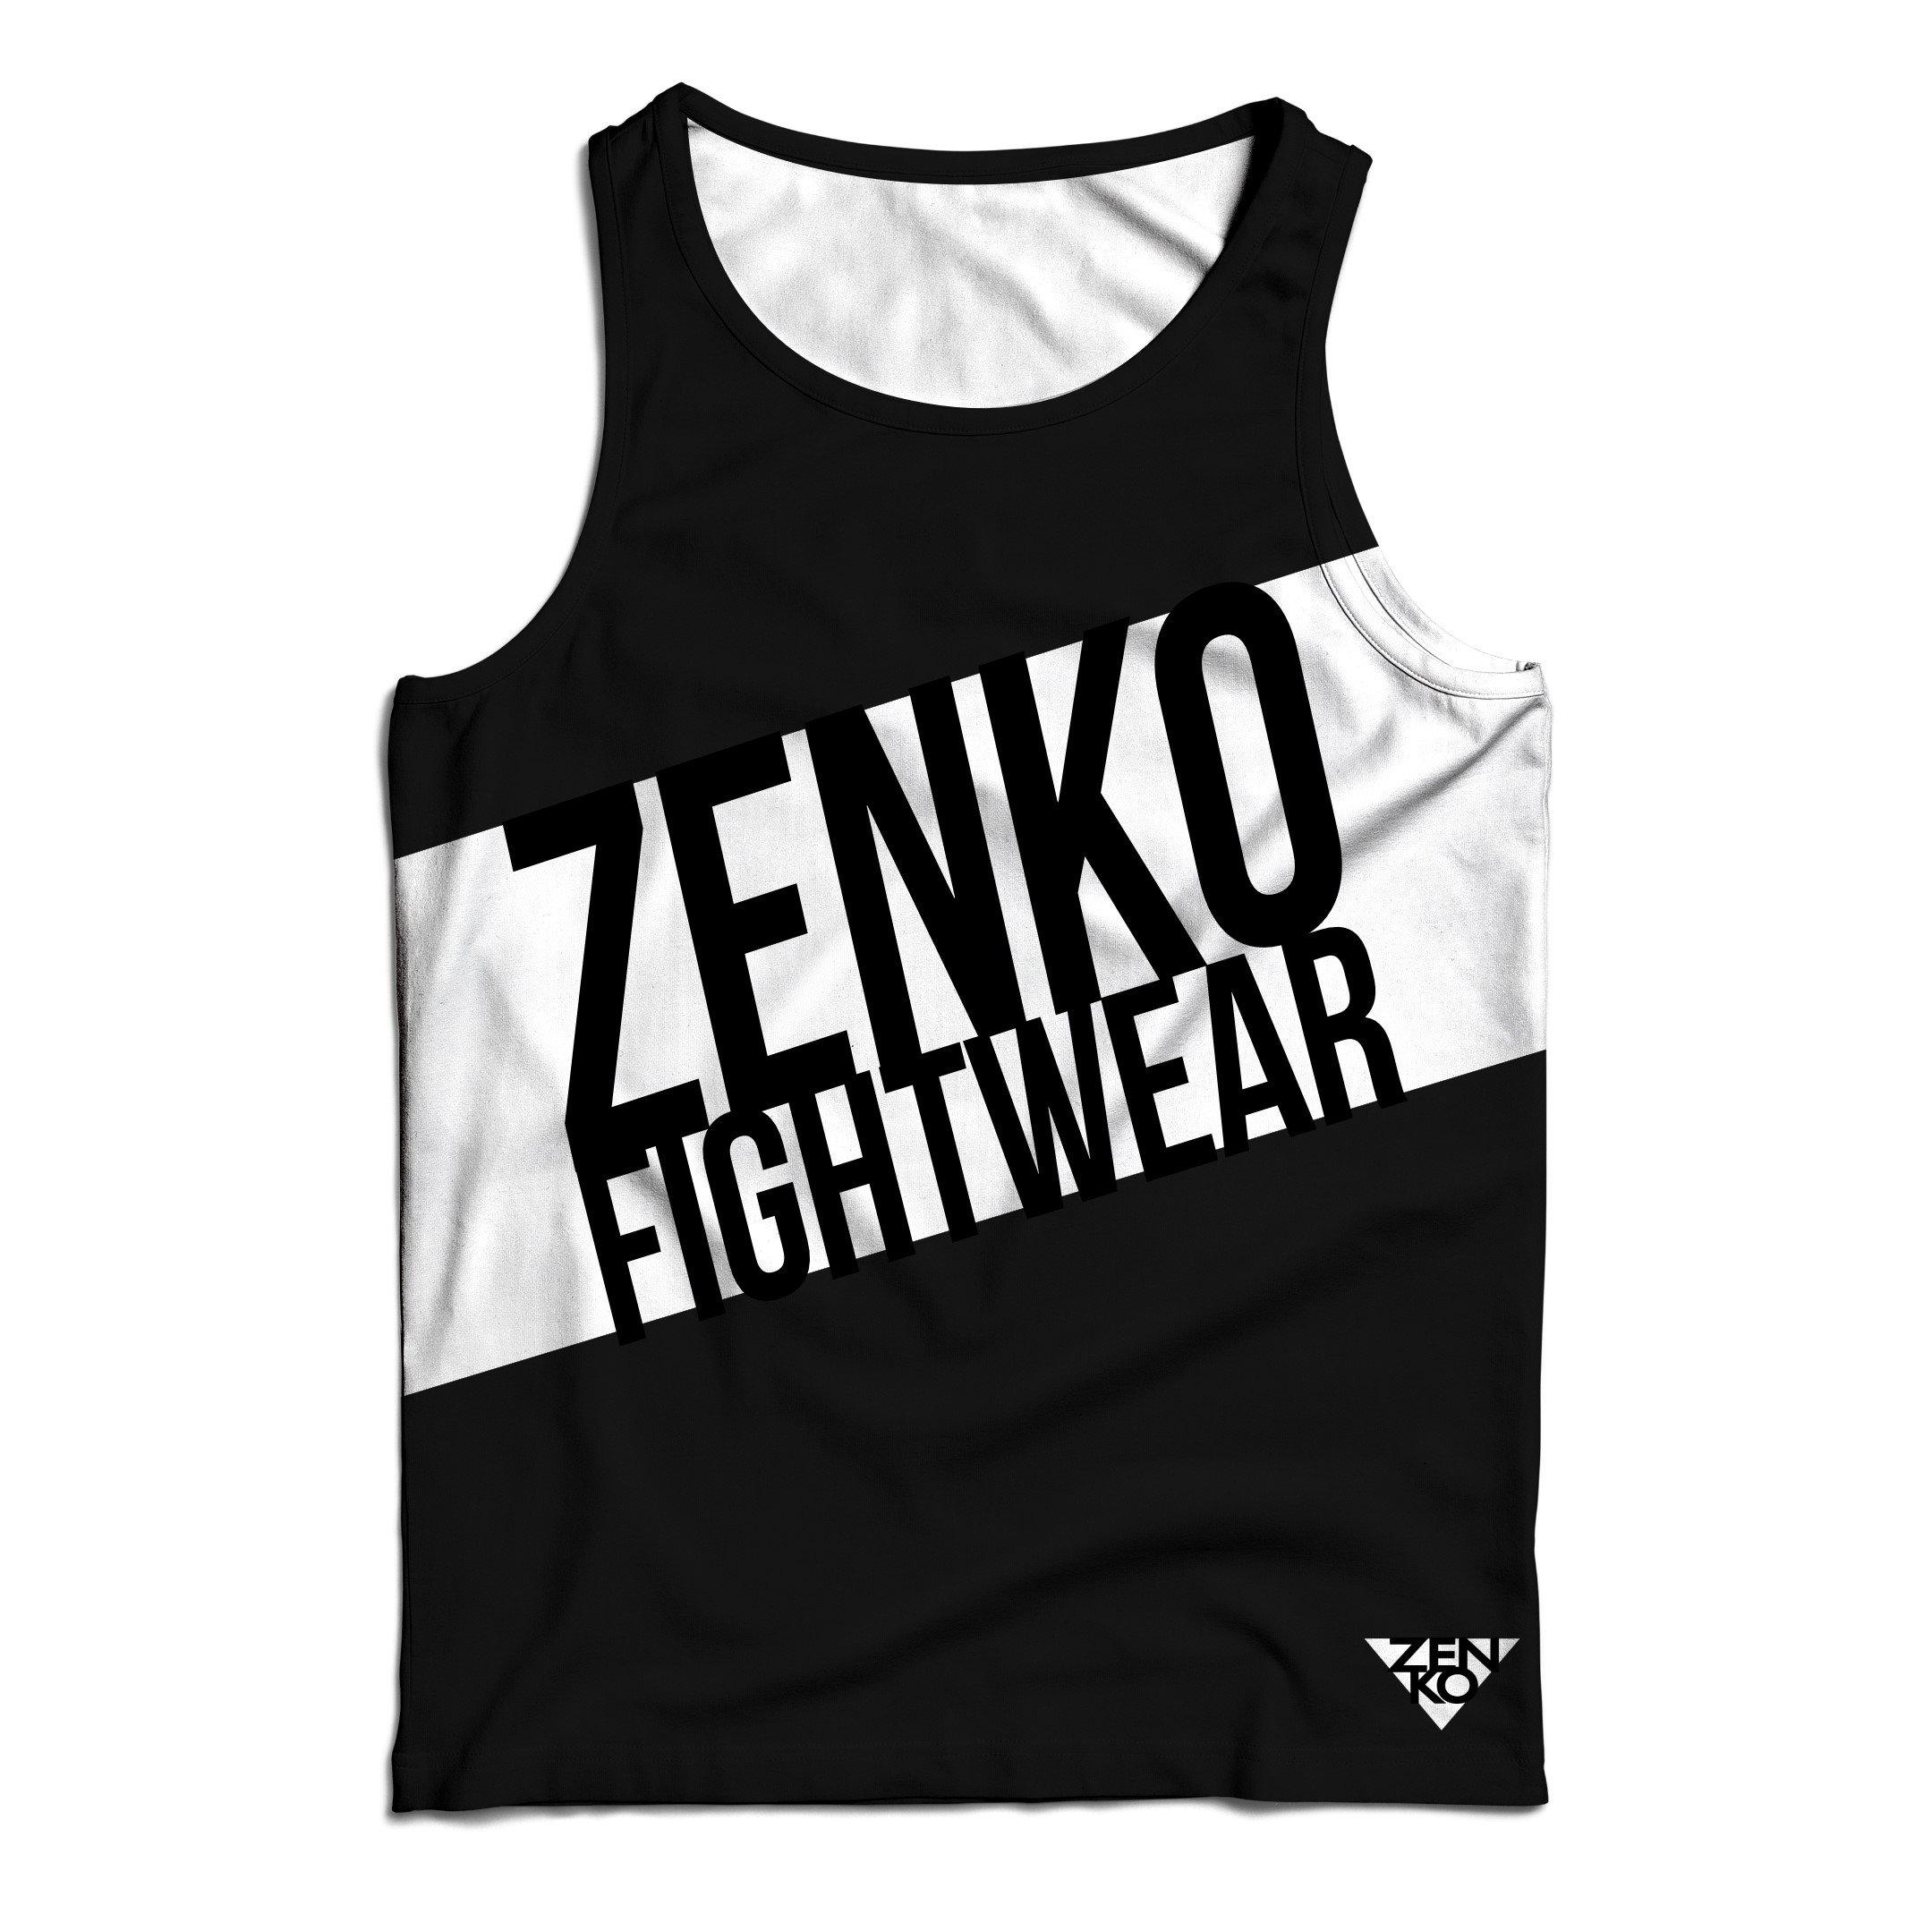 Zenko Fightwear Athlete Tank Top